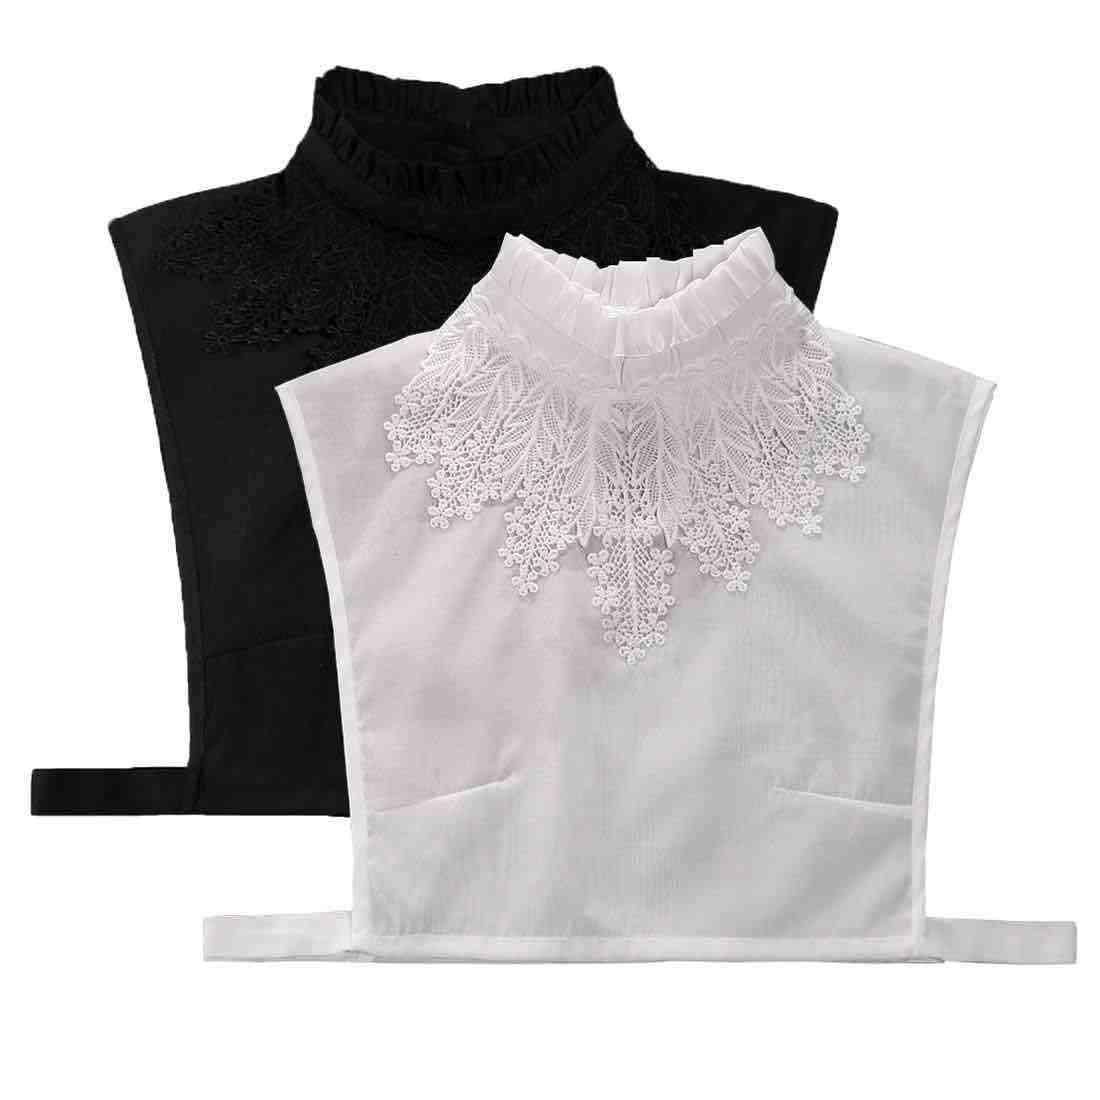 Adjustable Detachable Shirt Blouse Tops Ladies